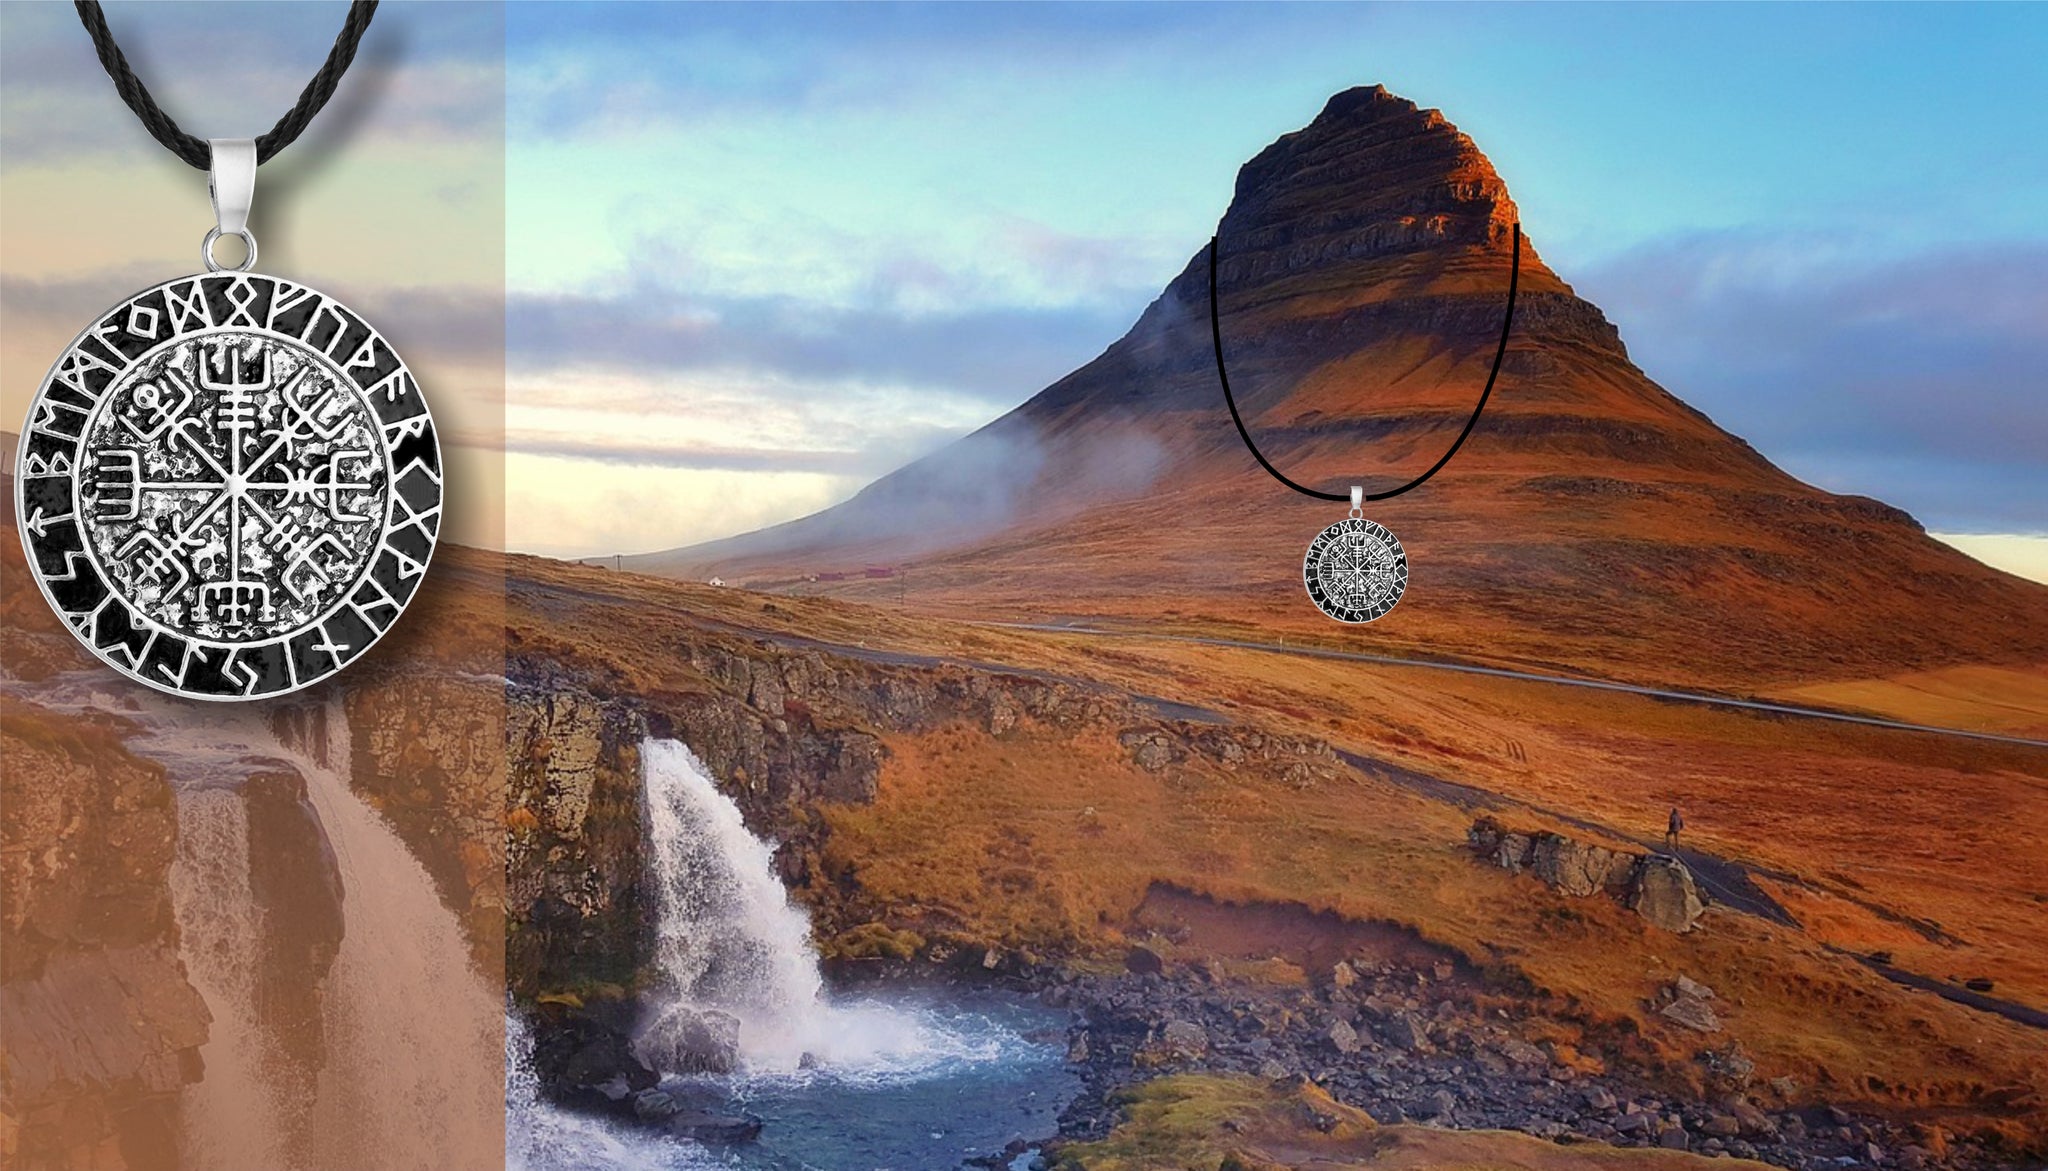 Le volcan islandais porte le fameux et véridique pendentif du Vegvisir. C'est un photomontage pour fixer les idées